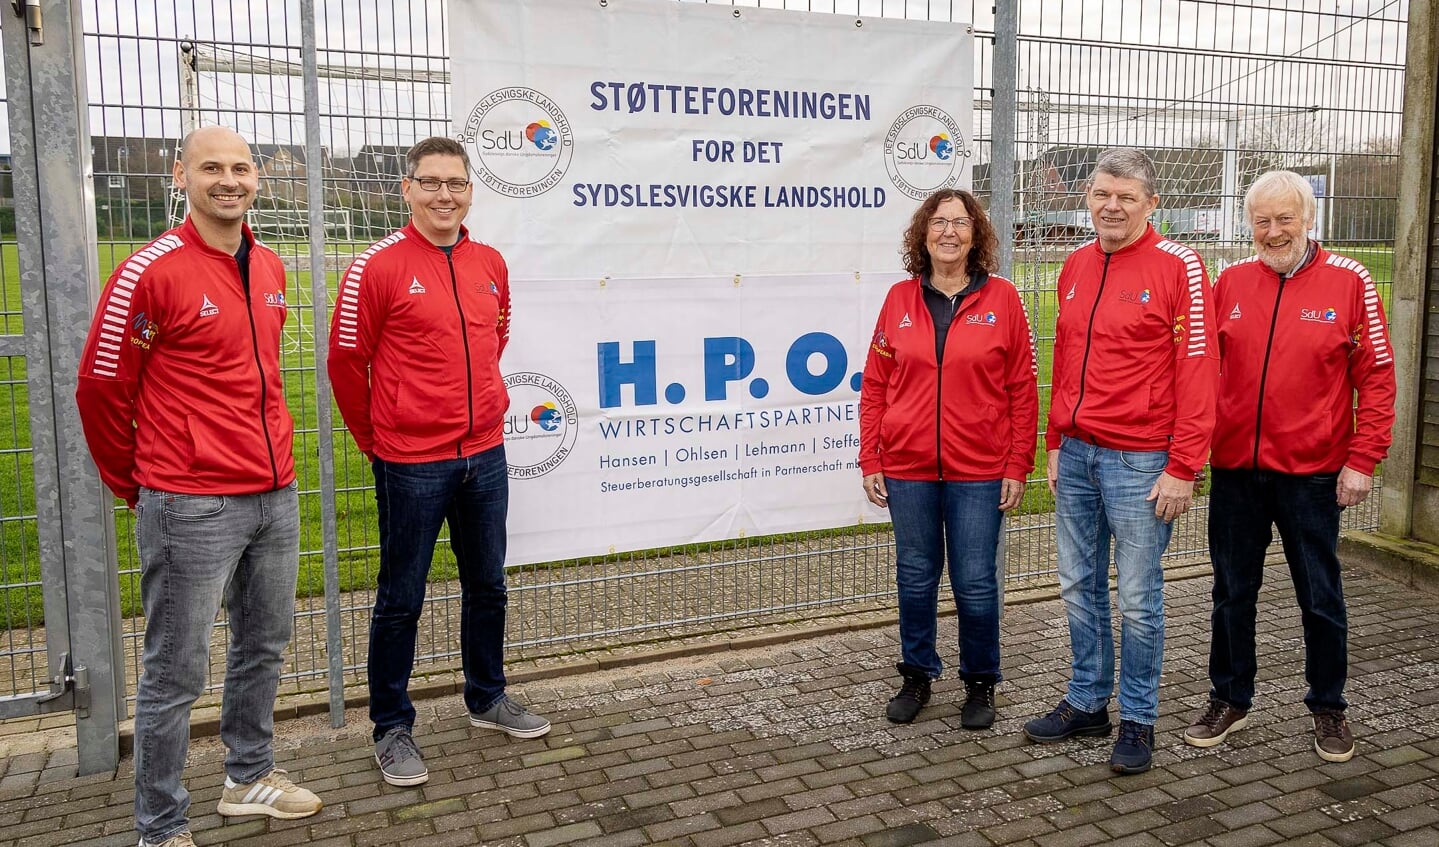 Stor glæde over, at hovedsponsor H.P.O. fortsætter støtten til SdU-Landsholdet. På billedet ses (fra venstre) Tore Wächter (træner), Christian Vach (H.P.O.), Barbara Ohlsen (H.P.O.), Horst Schneider (Støtteforneingens formand) og Kaj Andersen (Teammanager). 